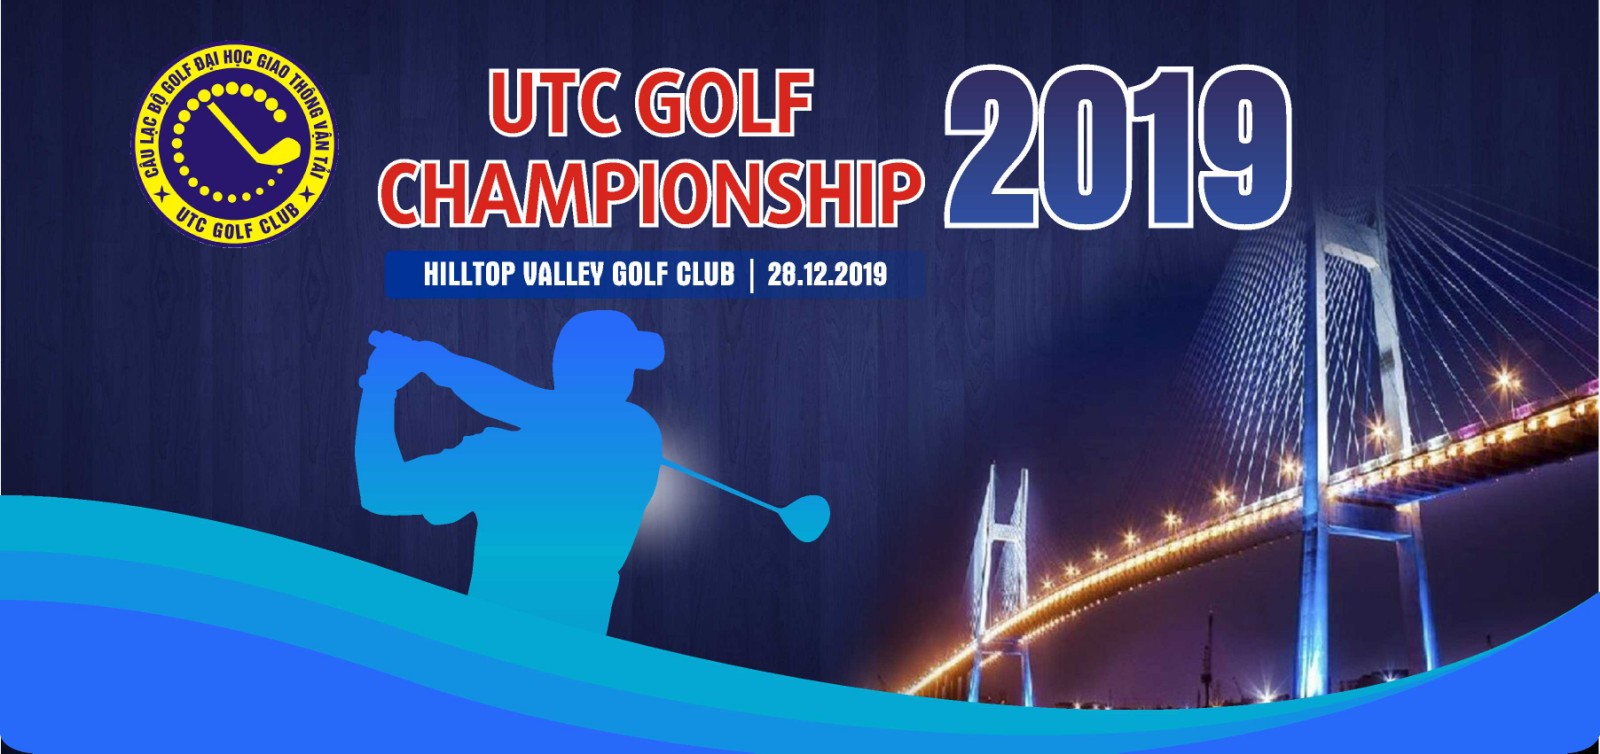 UTC Golf Championship 2019 chuẩn bị khởi tranh